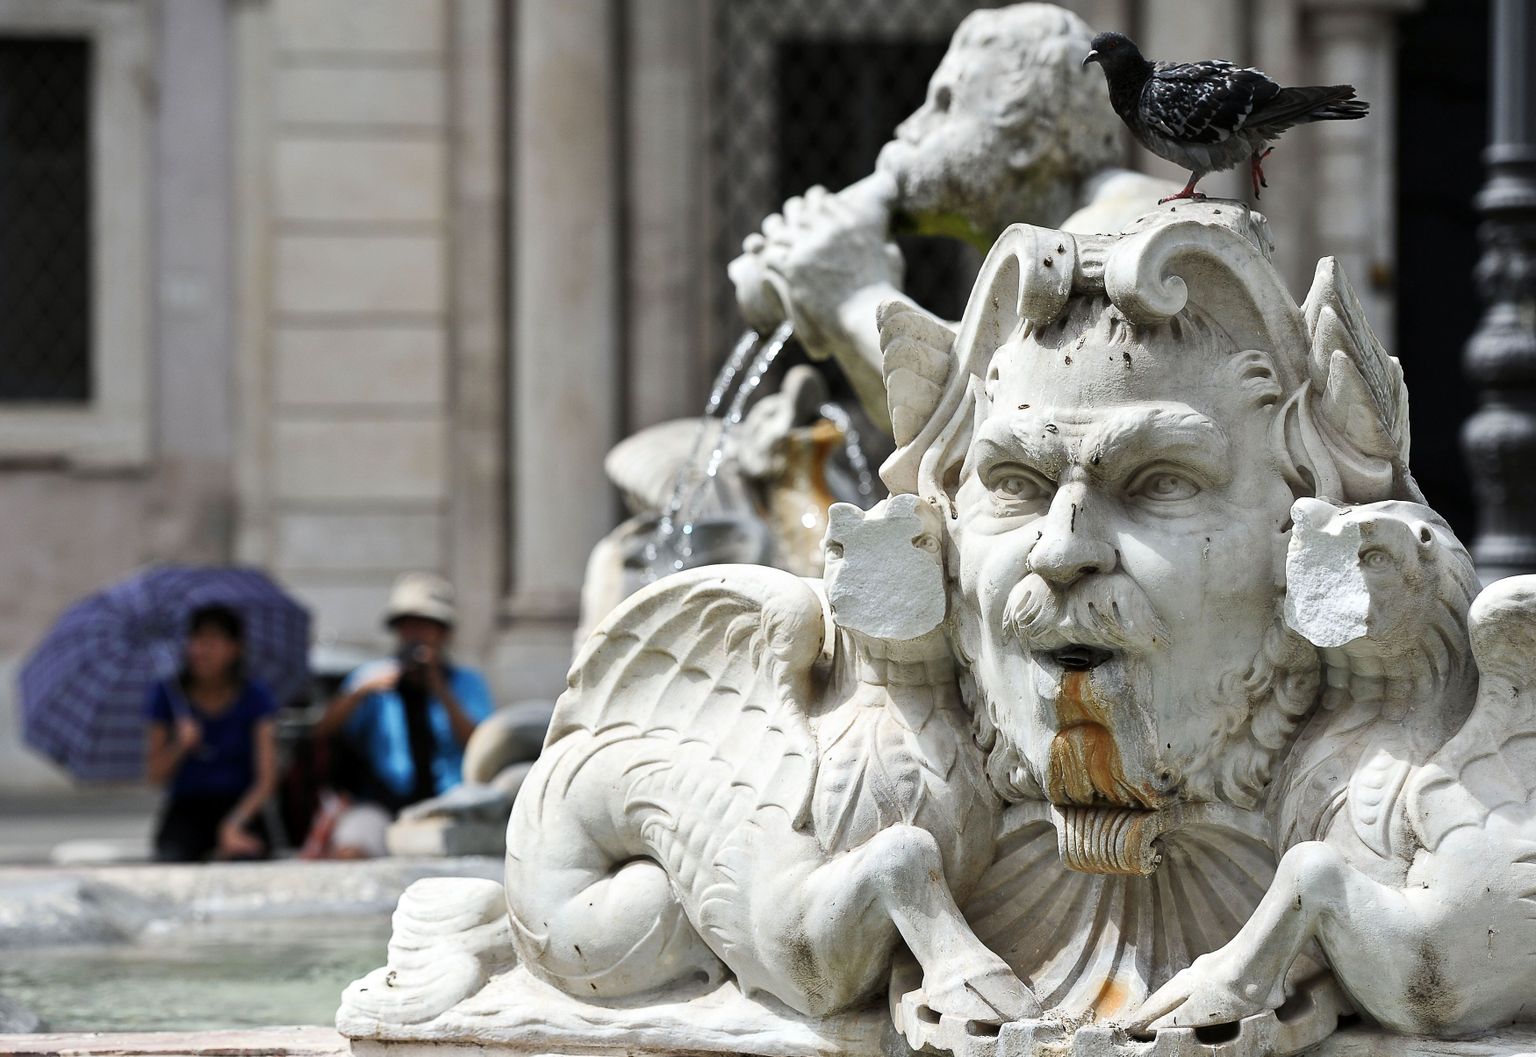 Pildil vandaalide tekitatud kahjustused Roomas asuval Fontana del Moro purskkaevul.